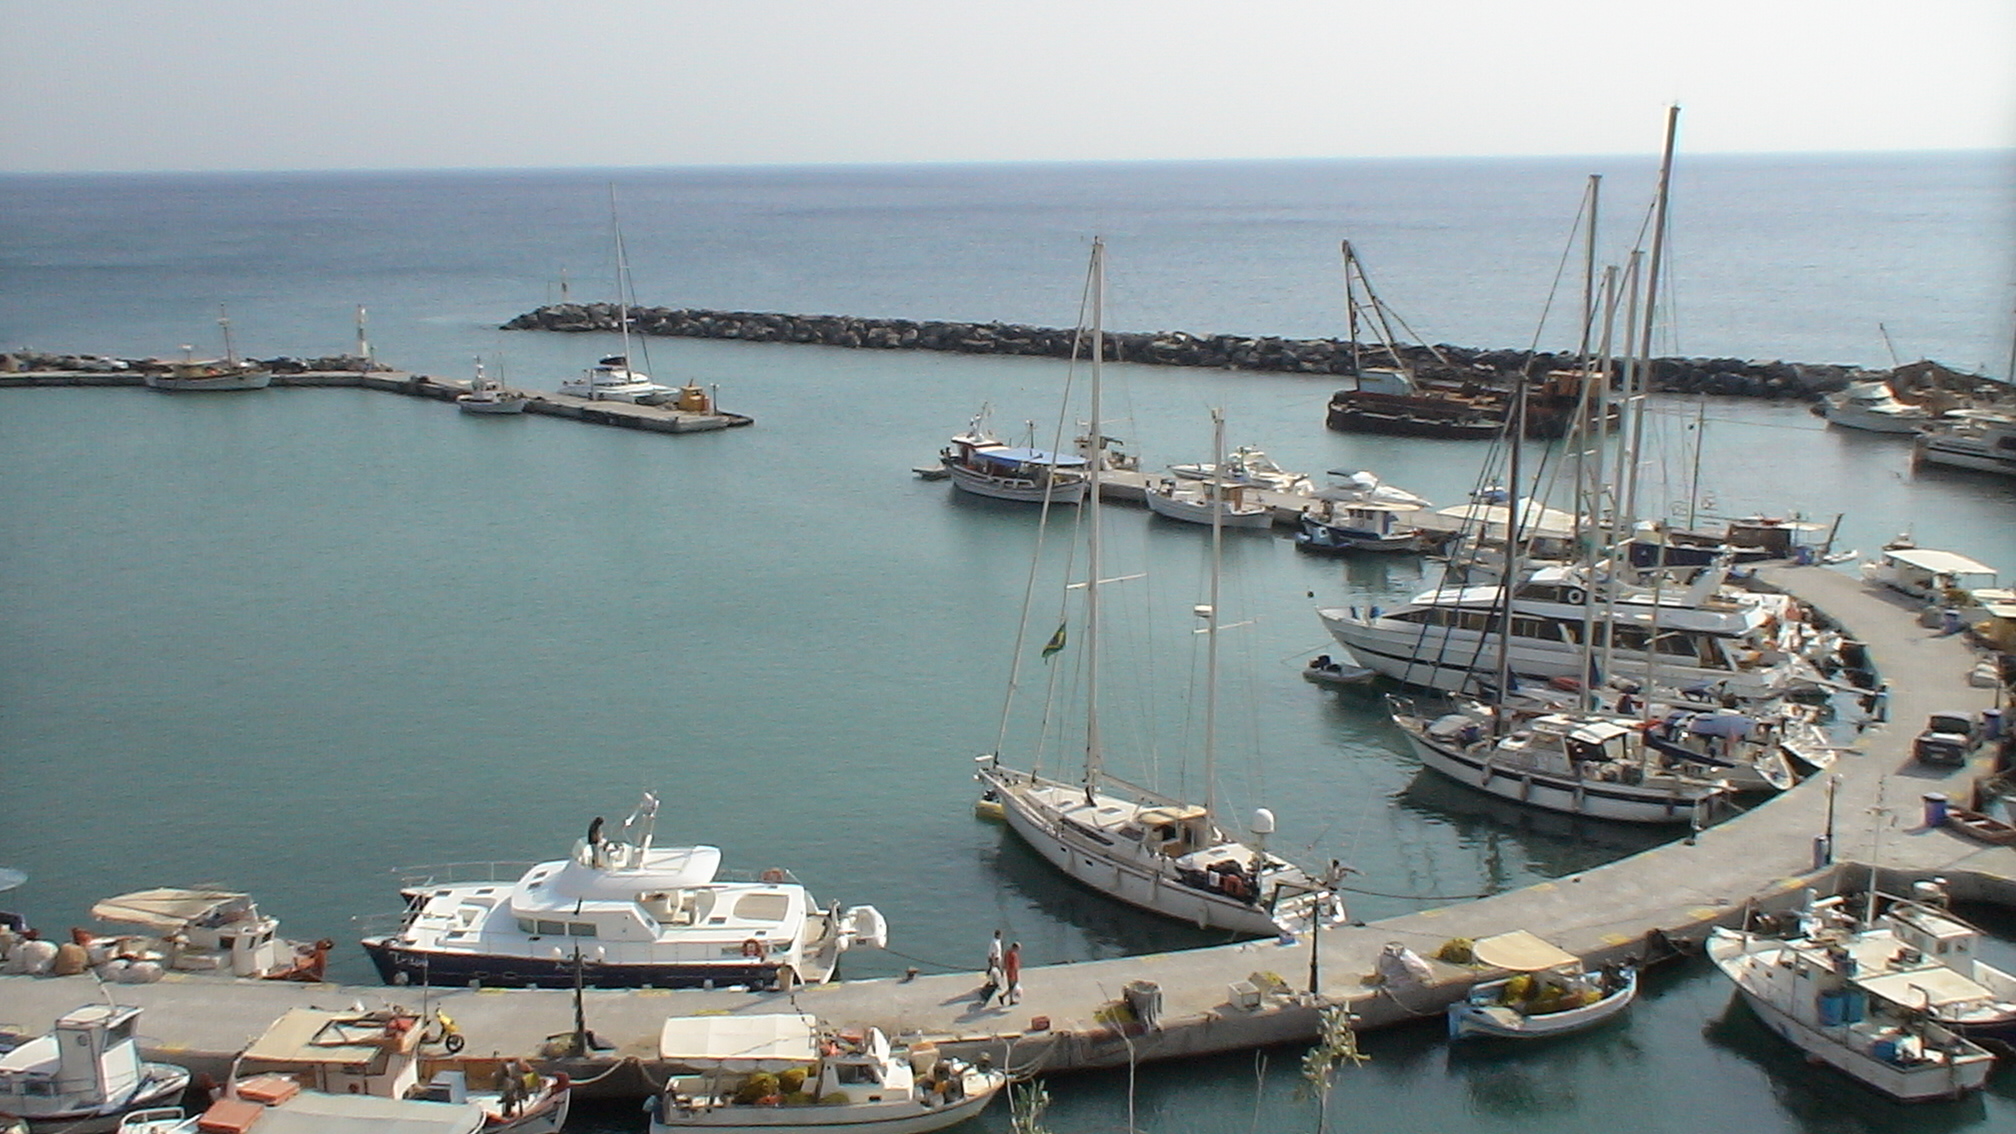 Santorin Yachthafen / Marina